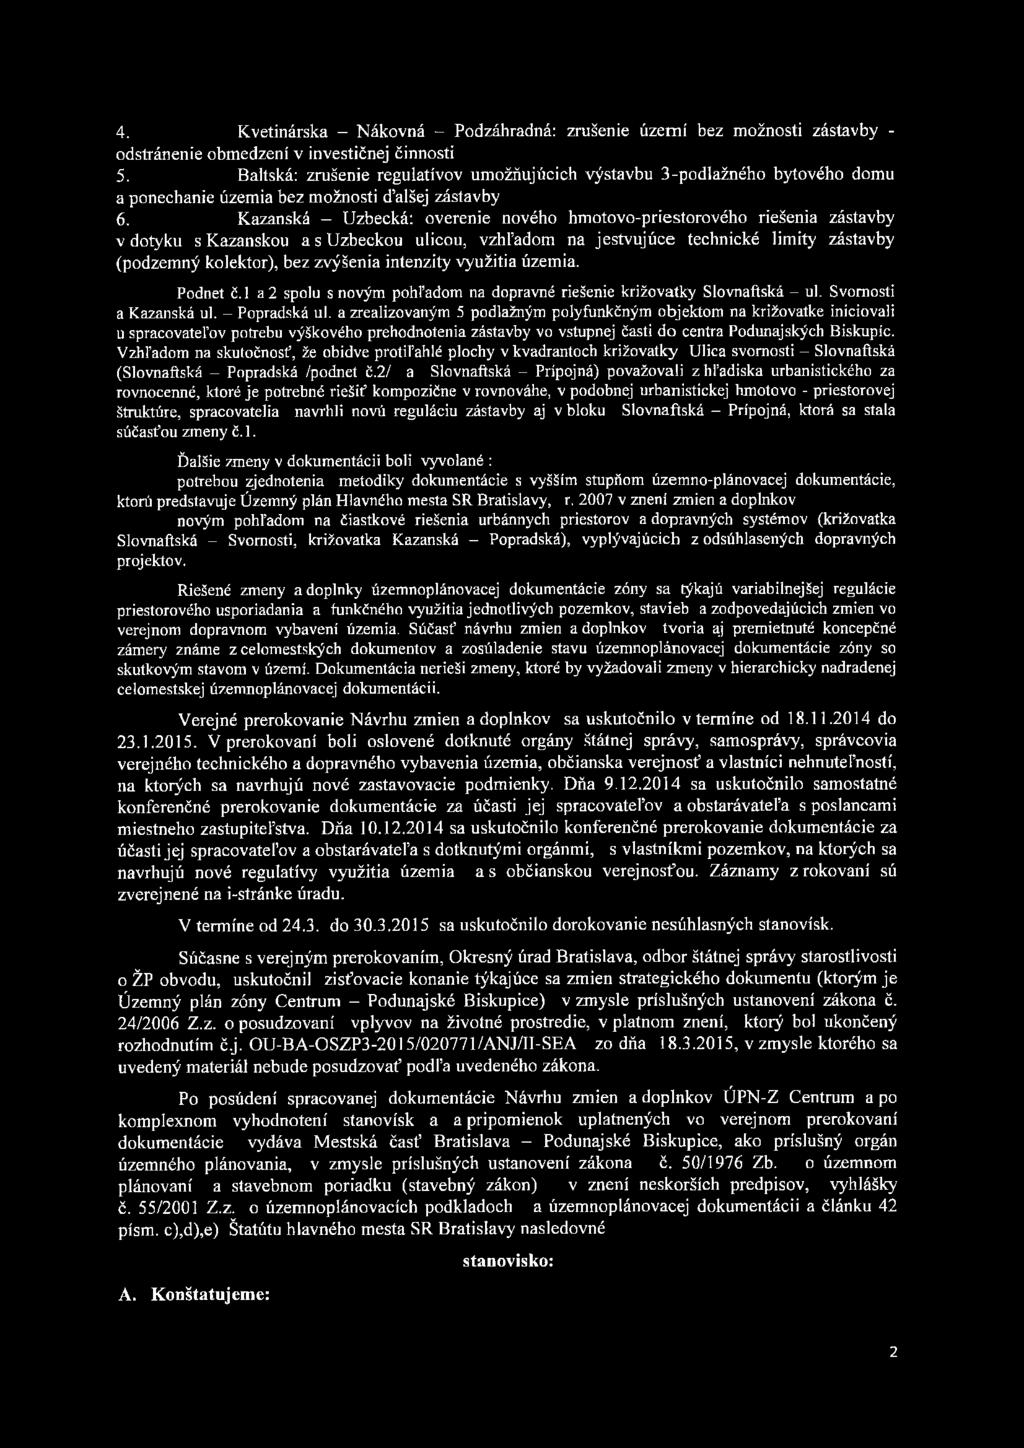 Kazanská - Uzbecká: overenie nového hmotovo-priestorového riešenia zástavby v dotyku s Kazanskou a s Uzbeckou ulicou, vzhľadom na jestvujúce technické limity zástavby (podzemný kolektor), bez